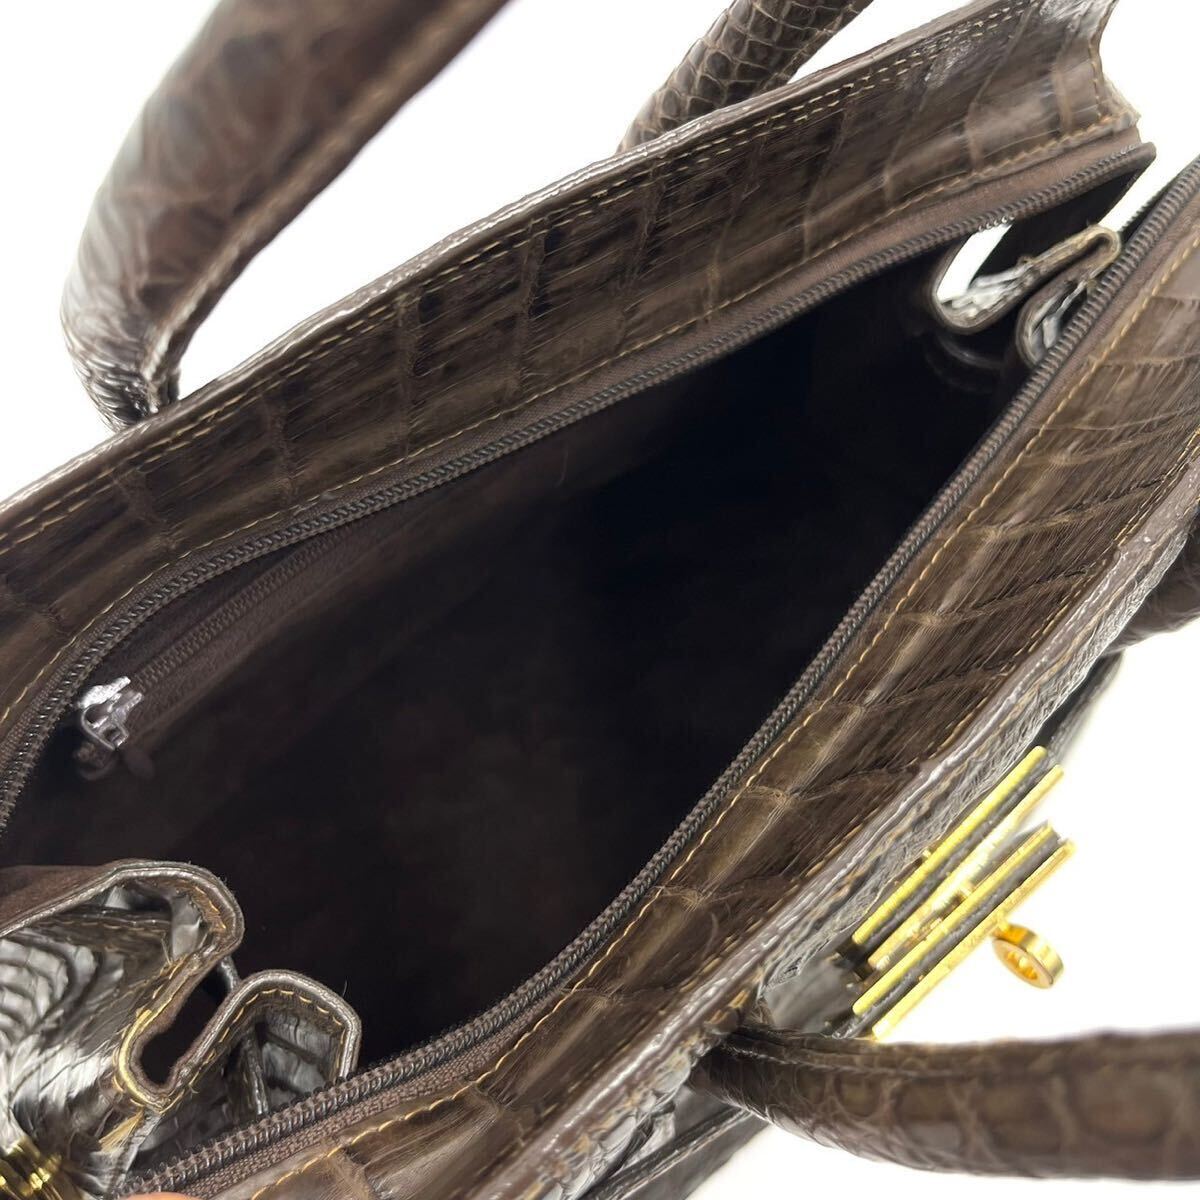  превосходный товар / высококлассный *wani кожа крокодил Crown ручная сумочка ручная сумка сумка настоящий кожа экзотический Gold металлические принадлежности автономный хаки 